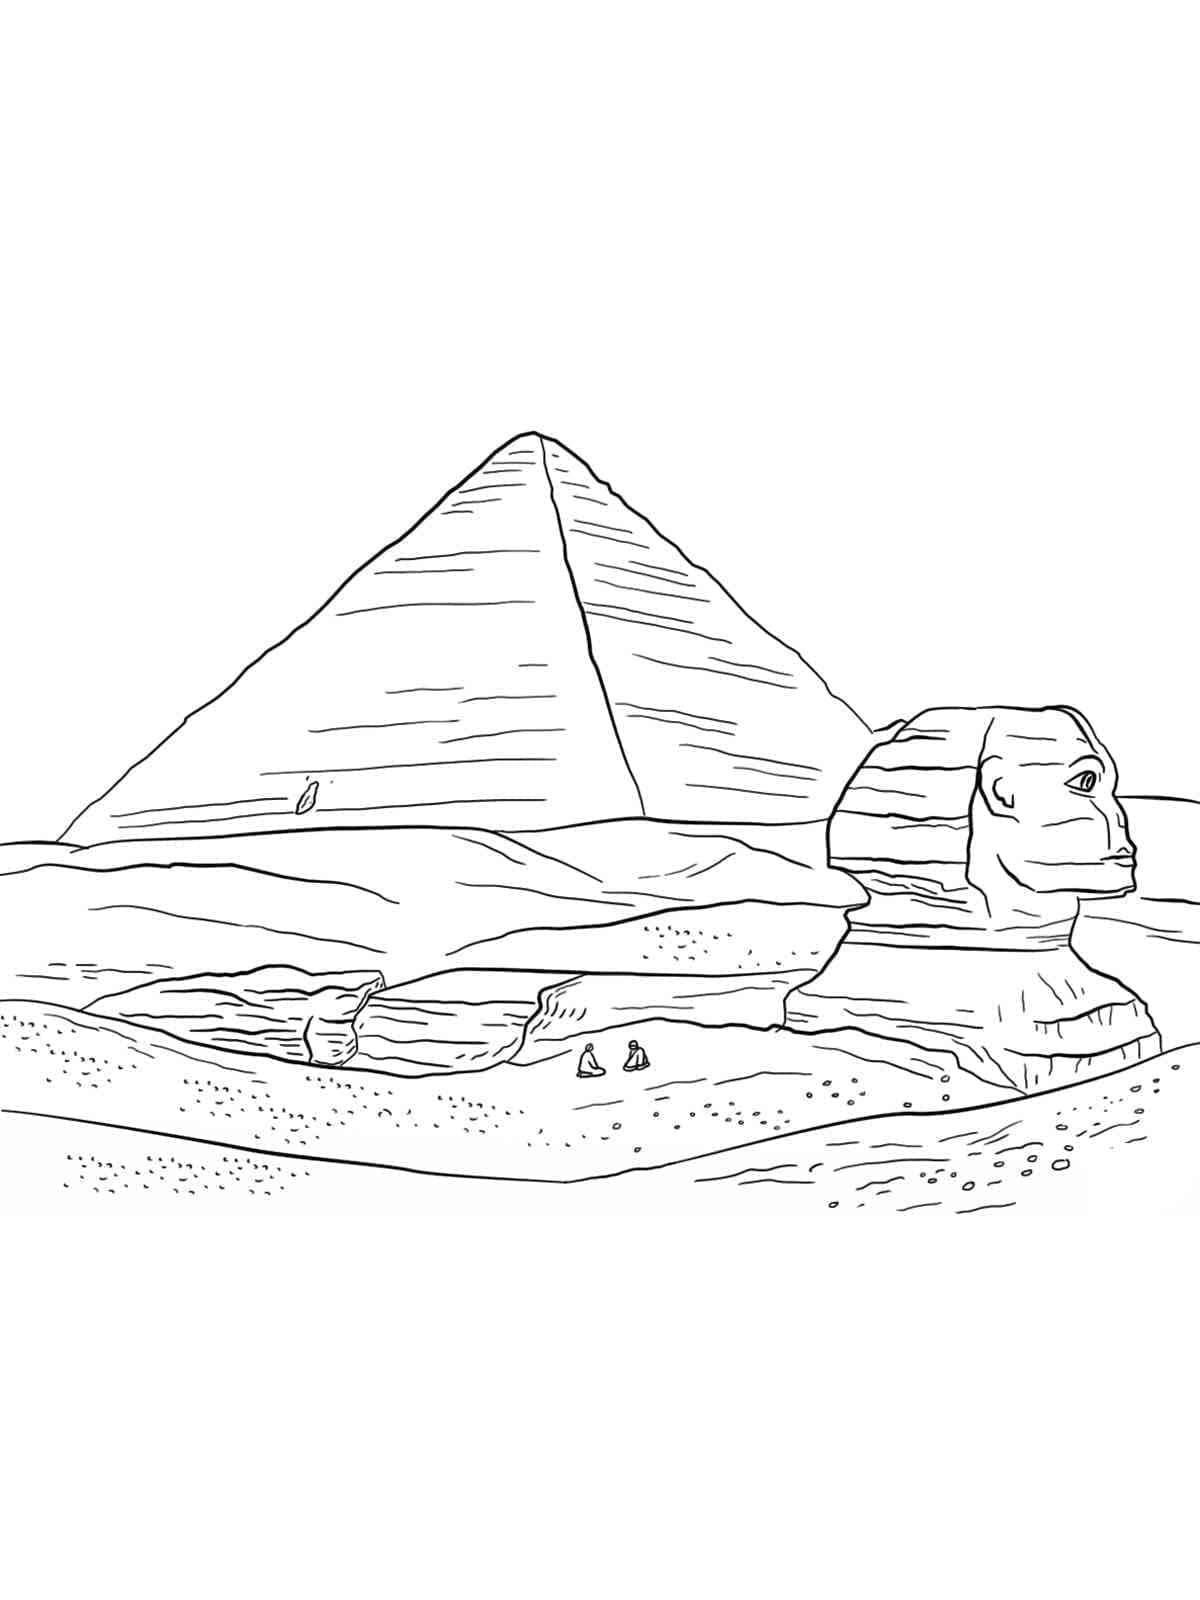 Coloriage Dessin Du Sphinx Et De La Pyramide